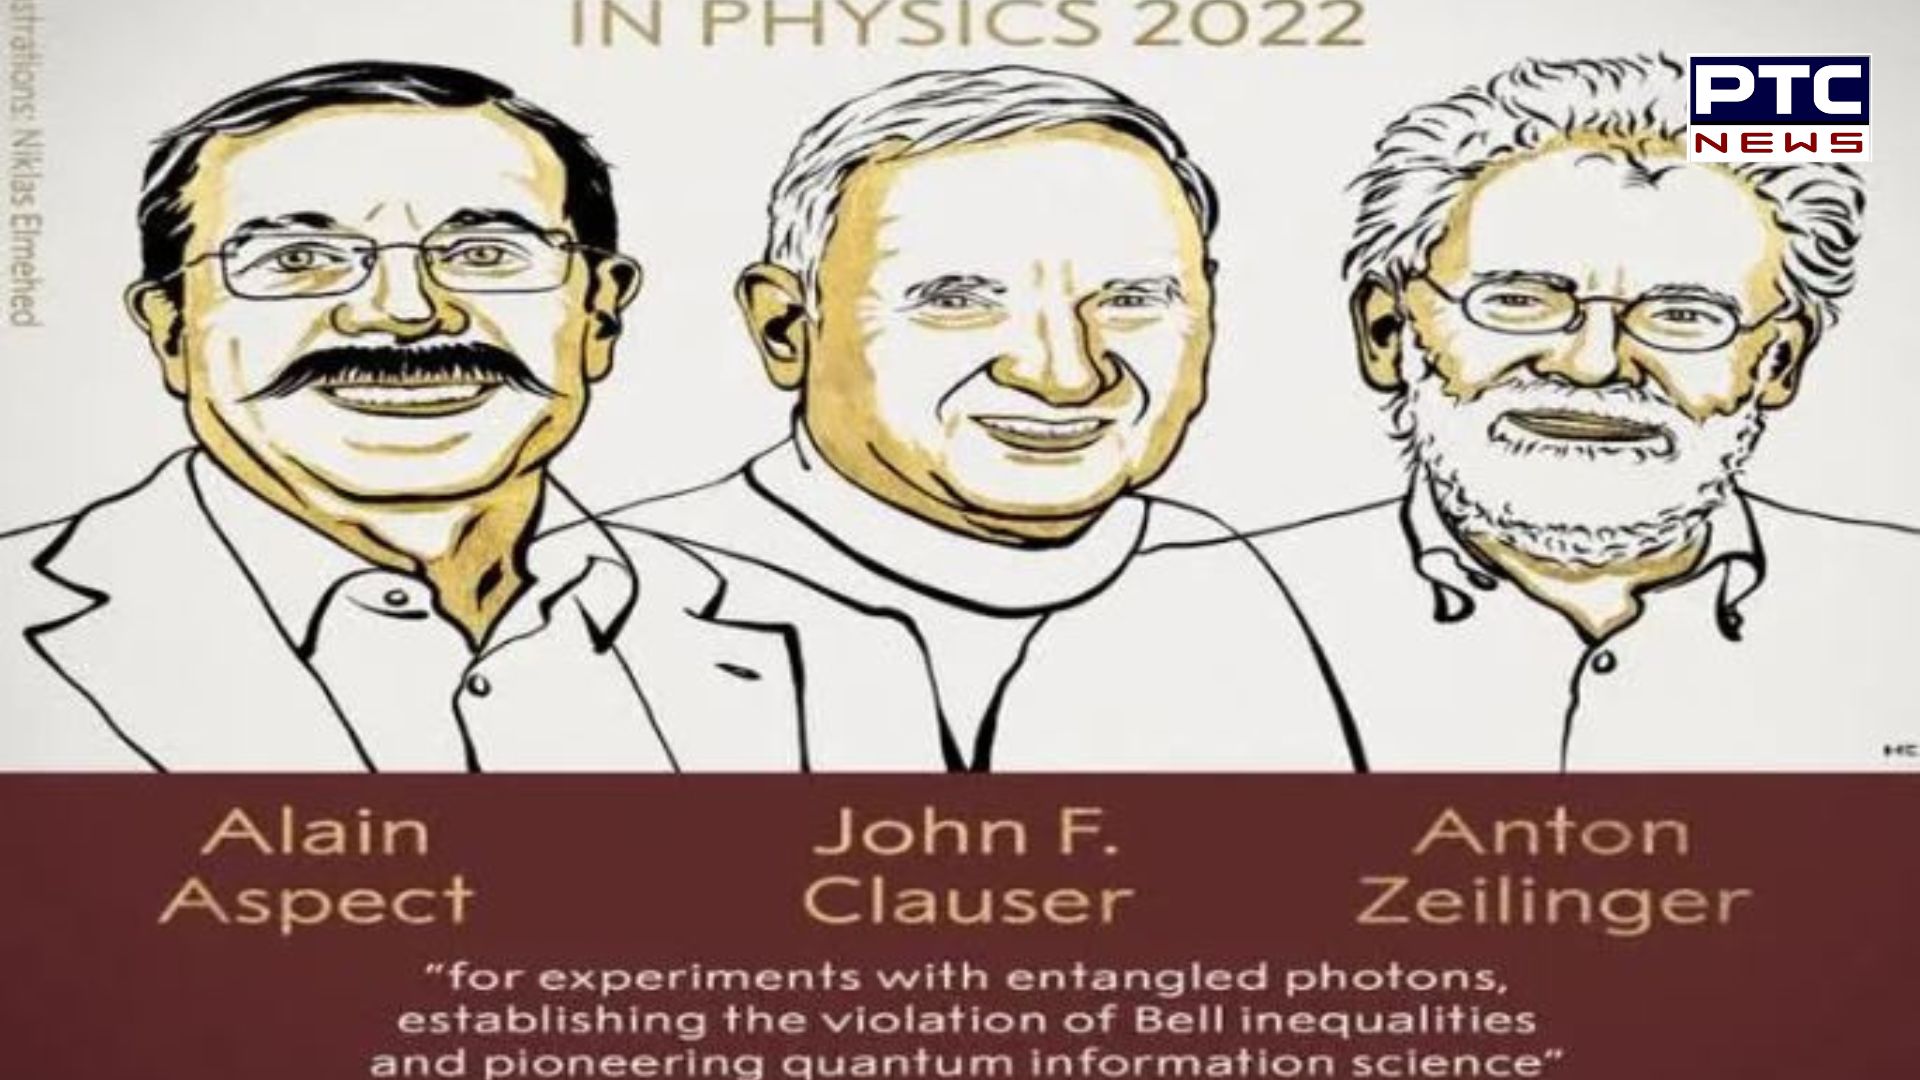 Nobel Prize 2022: ਤਿੰਨ ਵਿਗਿਆਨੀਆਂ ਨੂੰ ਦਿੱਤਾ ਜਾਵੇਗਾ ਭੌਤਿਕ ਵਿਗਿਆਨ ਦਾ ਨੋਬਲ ਪੁਰਸਕਾਰ